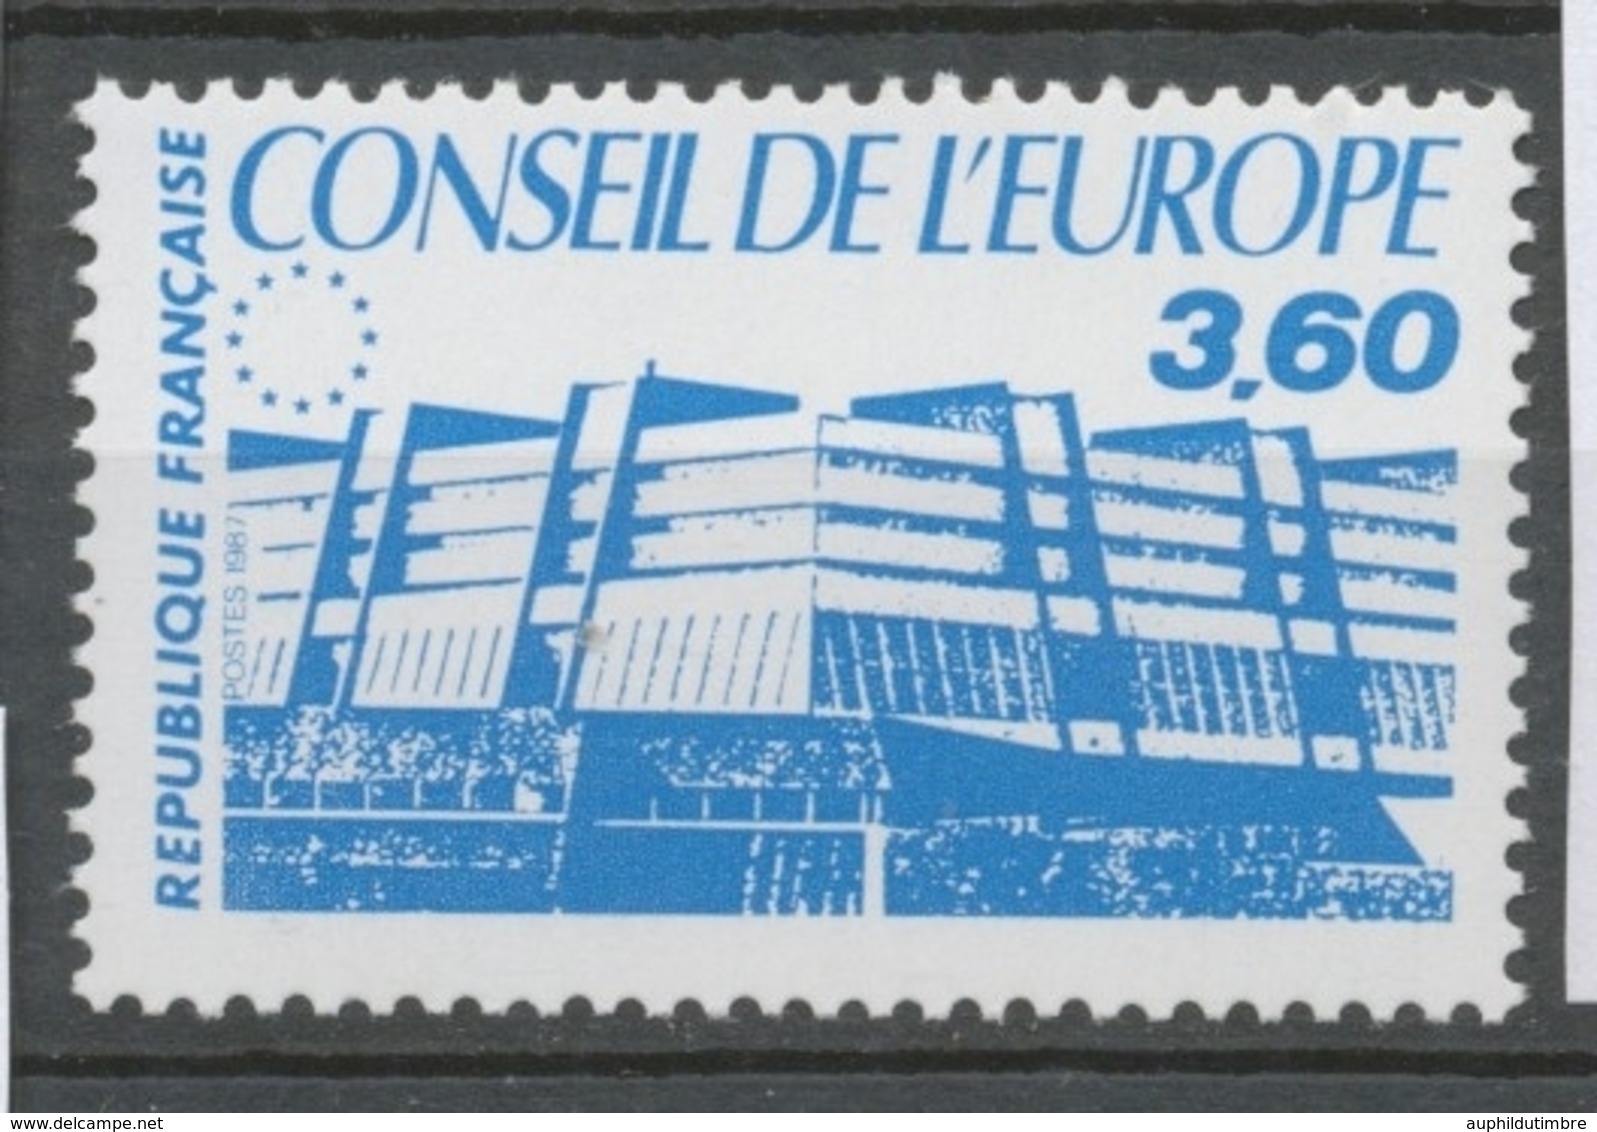 Service N°97 Conseil De L' Europe. 3f.60 Bleu ZS97 - Ungebraucht